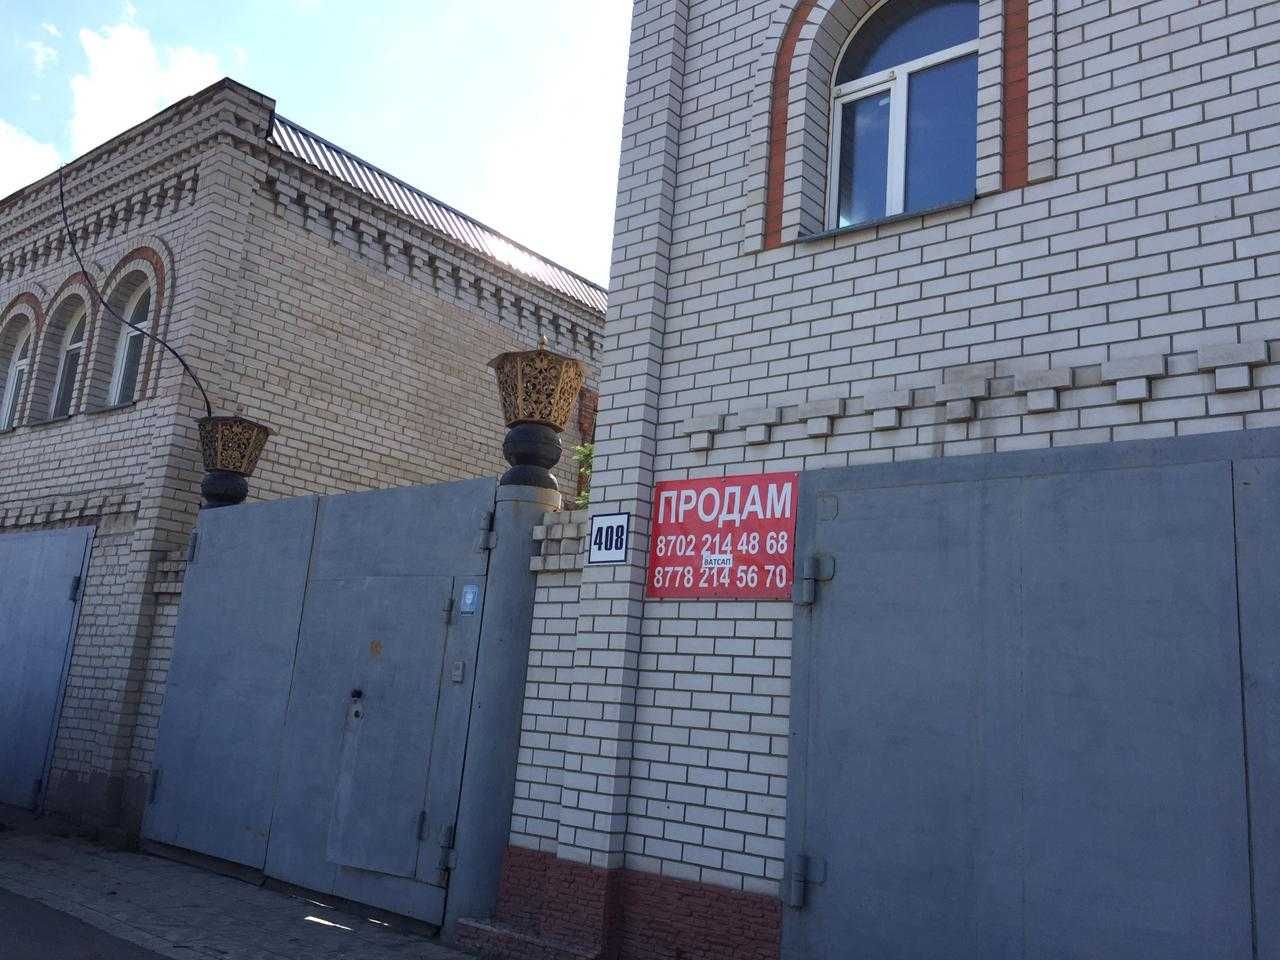 Продам коттедж в Павлодаре